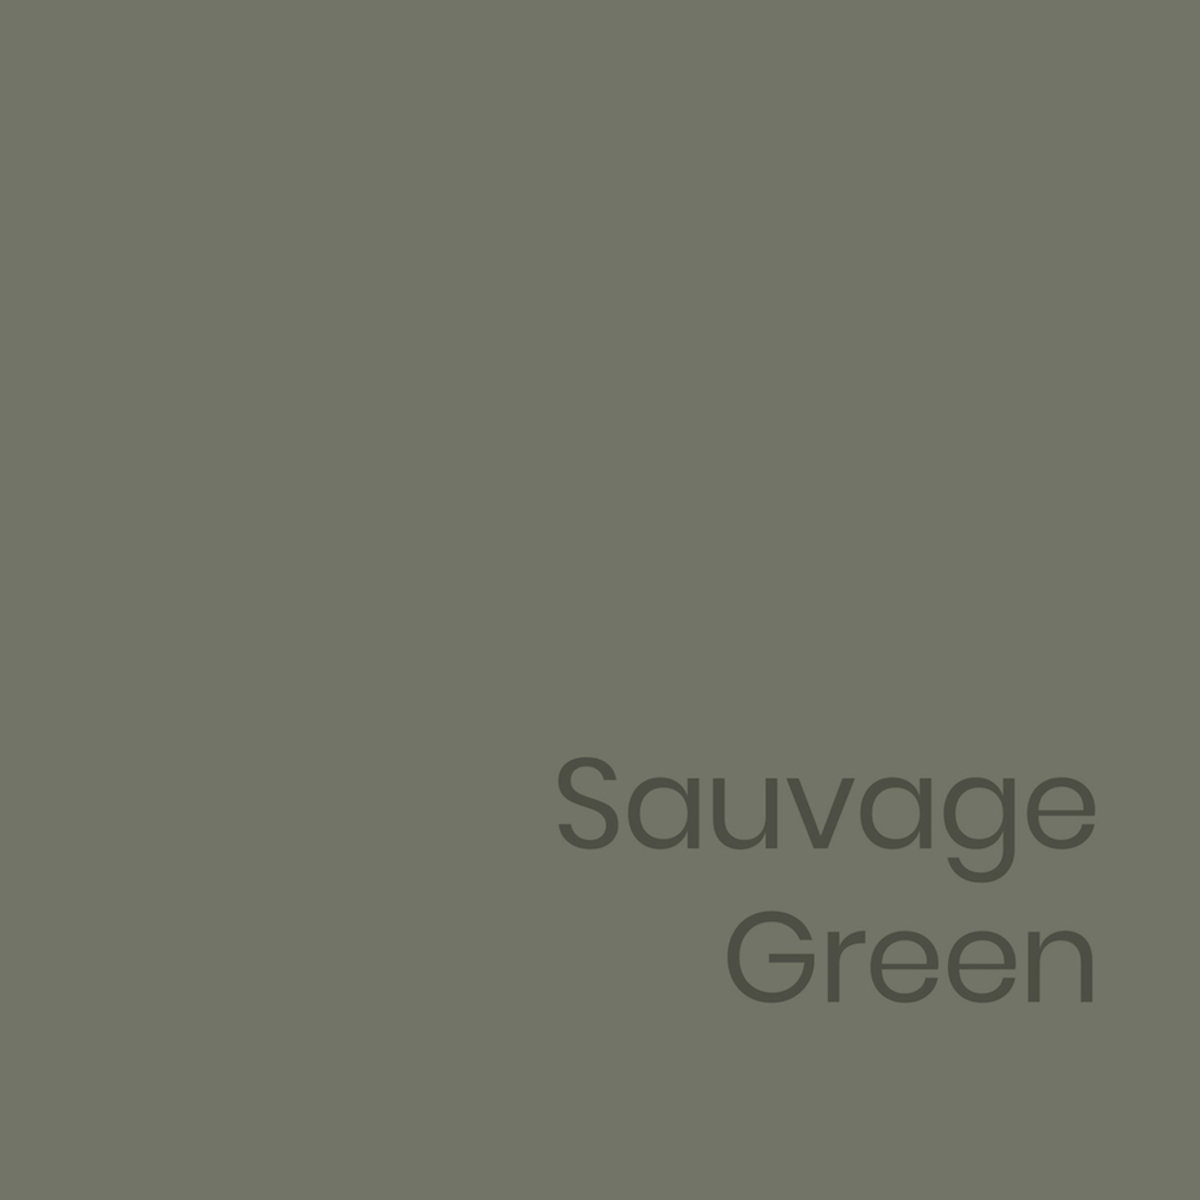 Testador de Sauvage Green